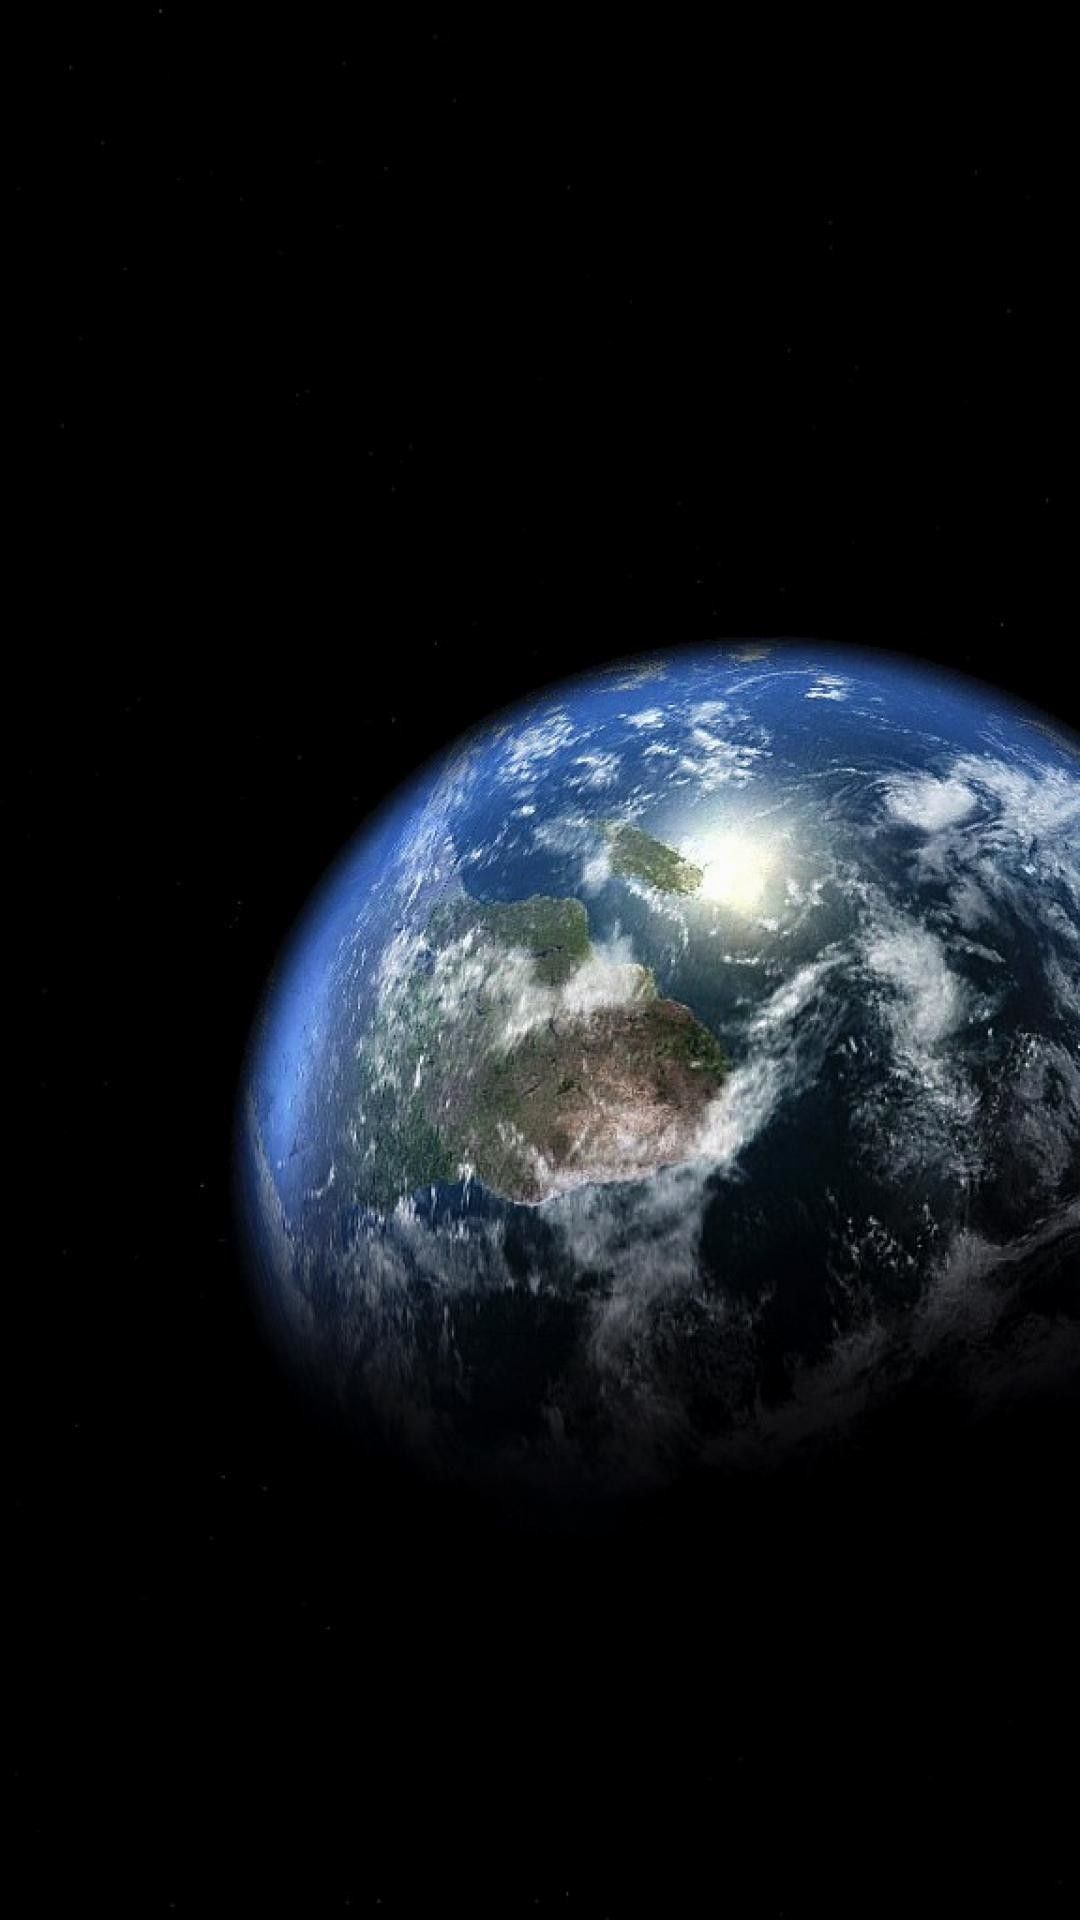 عکس پروفایل رویایی از کره زمین با زمینه مشکی کهکشان